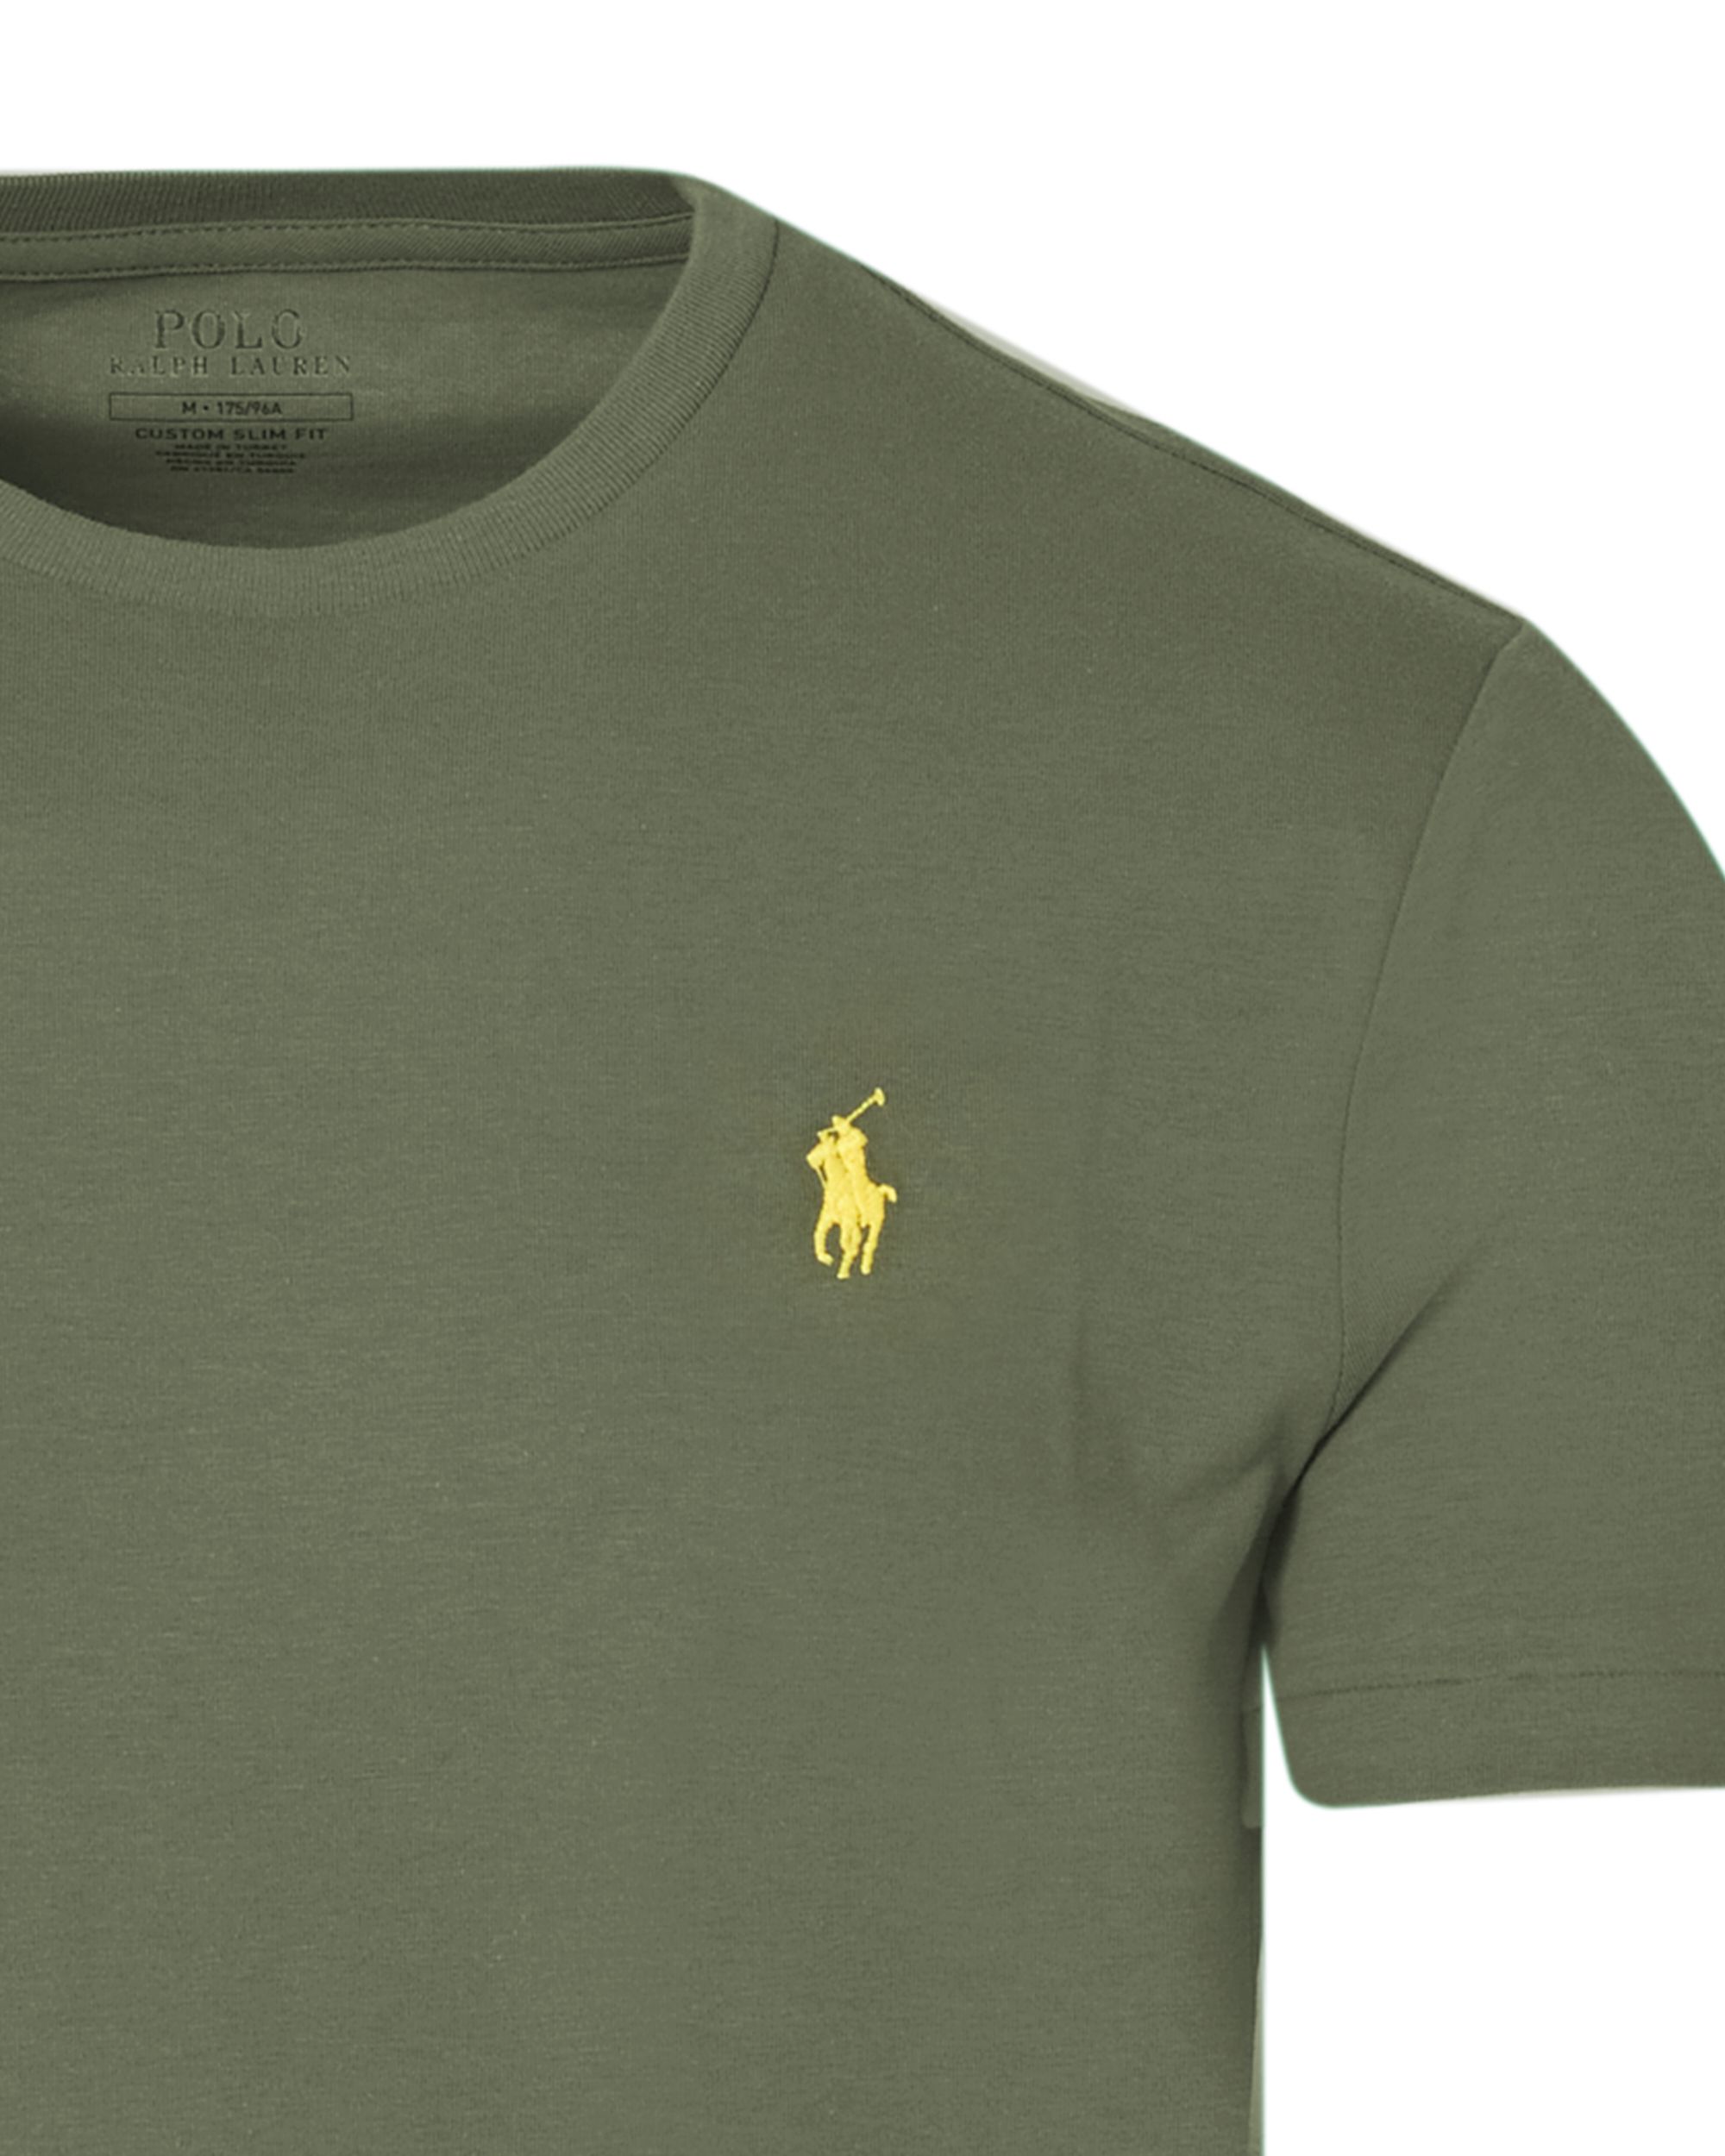 Polo Ralph Lauren T-shirt KM Donker groen 083430-001-L